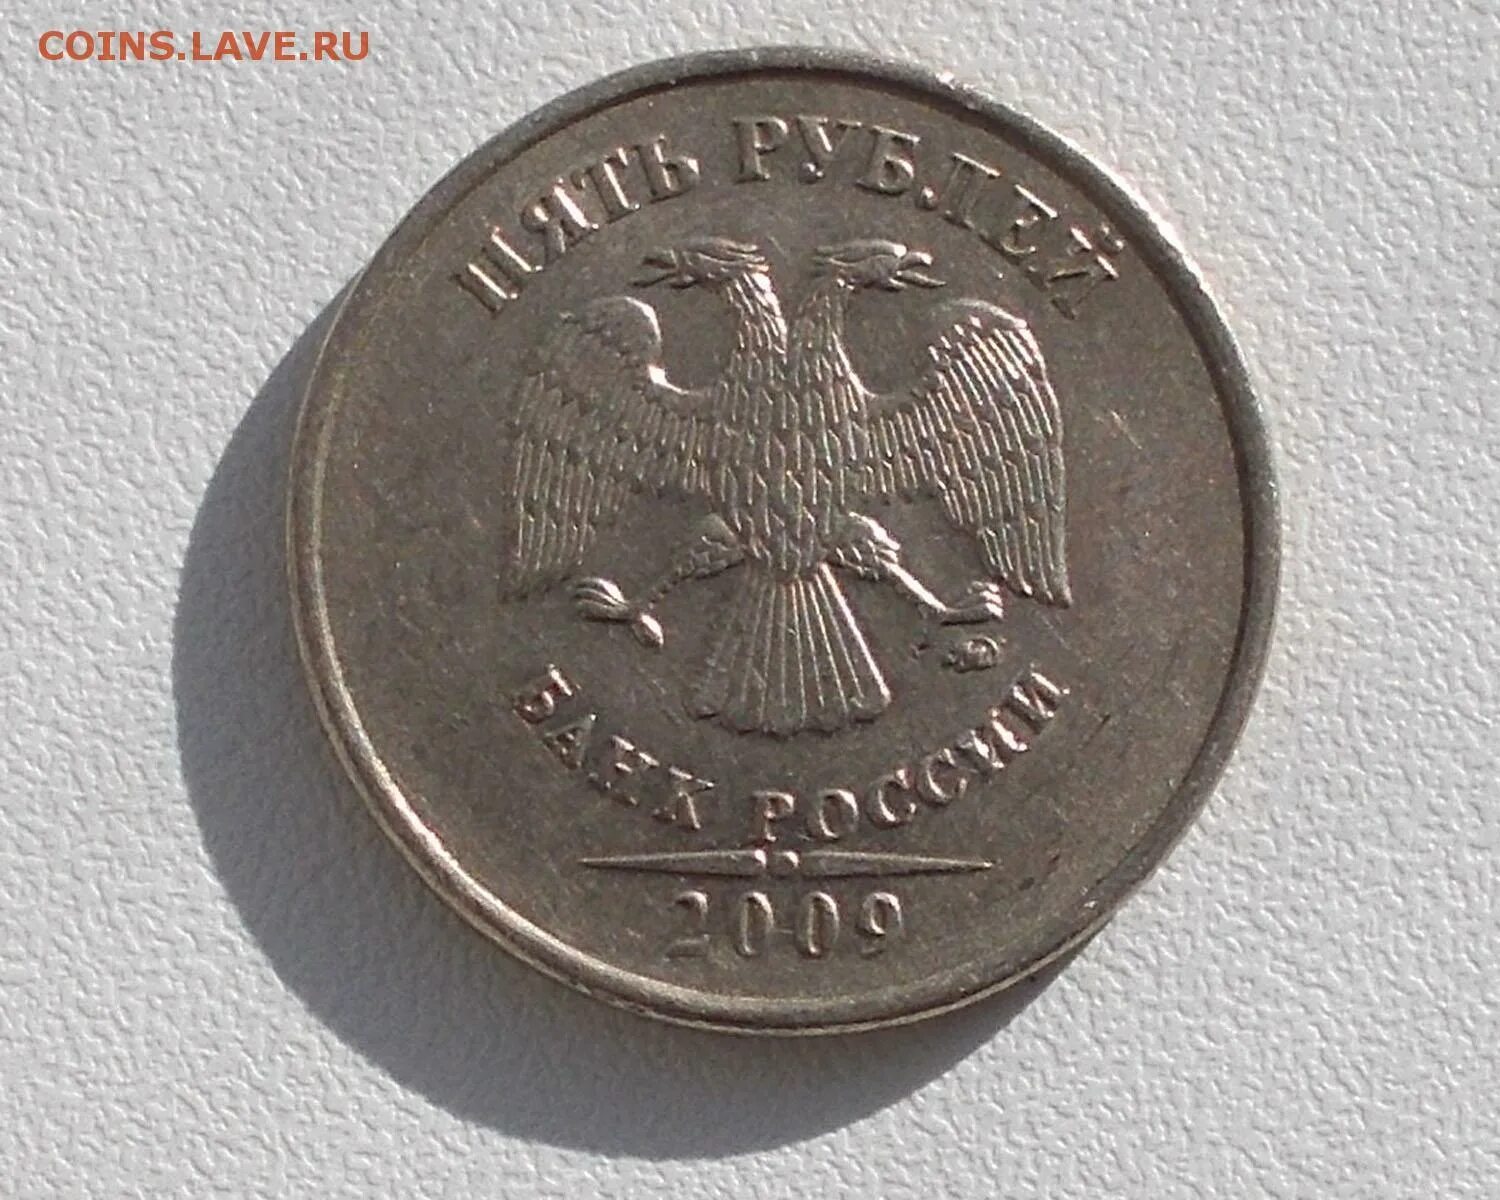 5 рублей 2009 ммд. 1 Рубль 2009 ММД (немагнитная). Сколько стоит 1 рубль 2009 года ММД немагнитная.